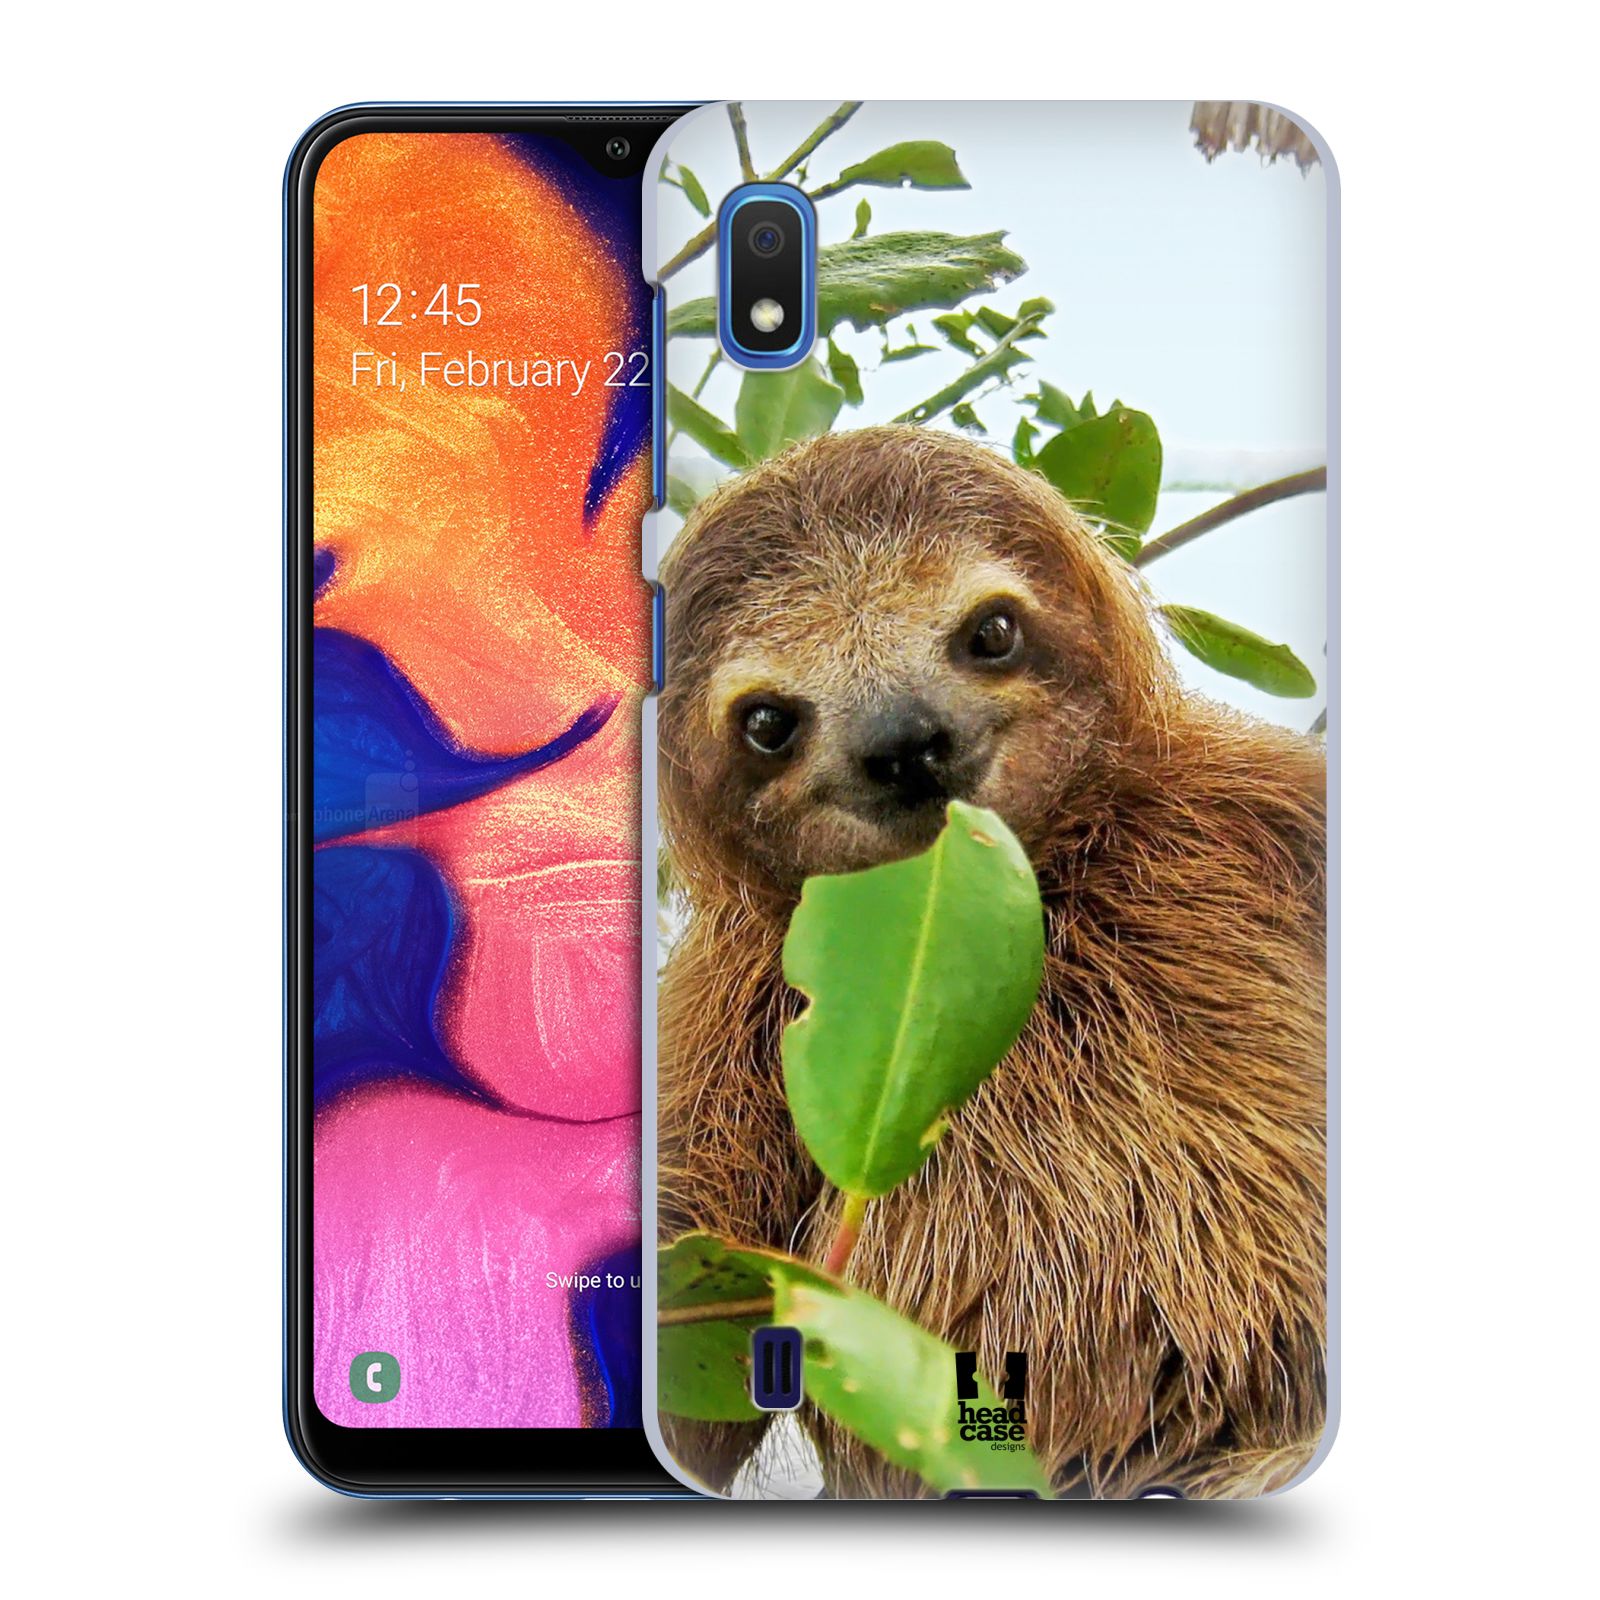 Pouzdro na mobil Samsung Galaxy A10 - HEAD CASE - vzor slavná zvířata foto lenochod